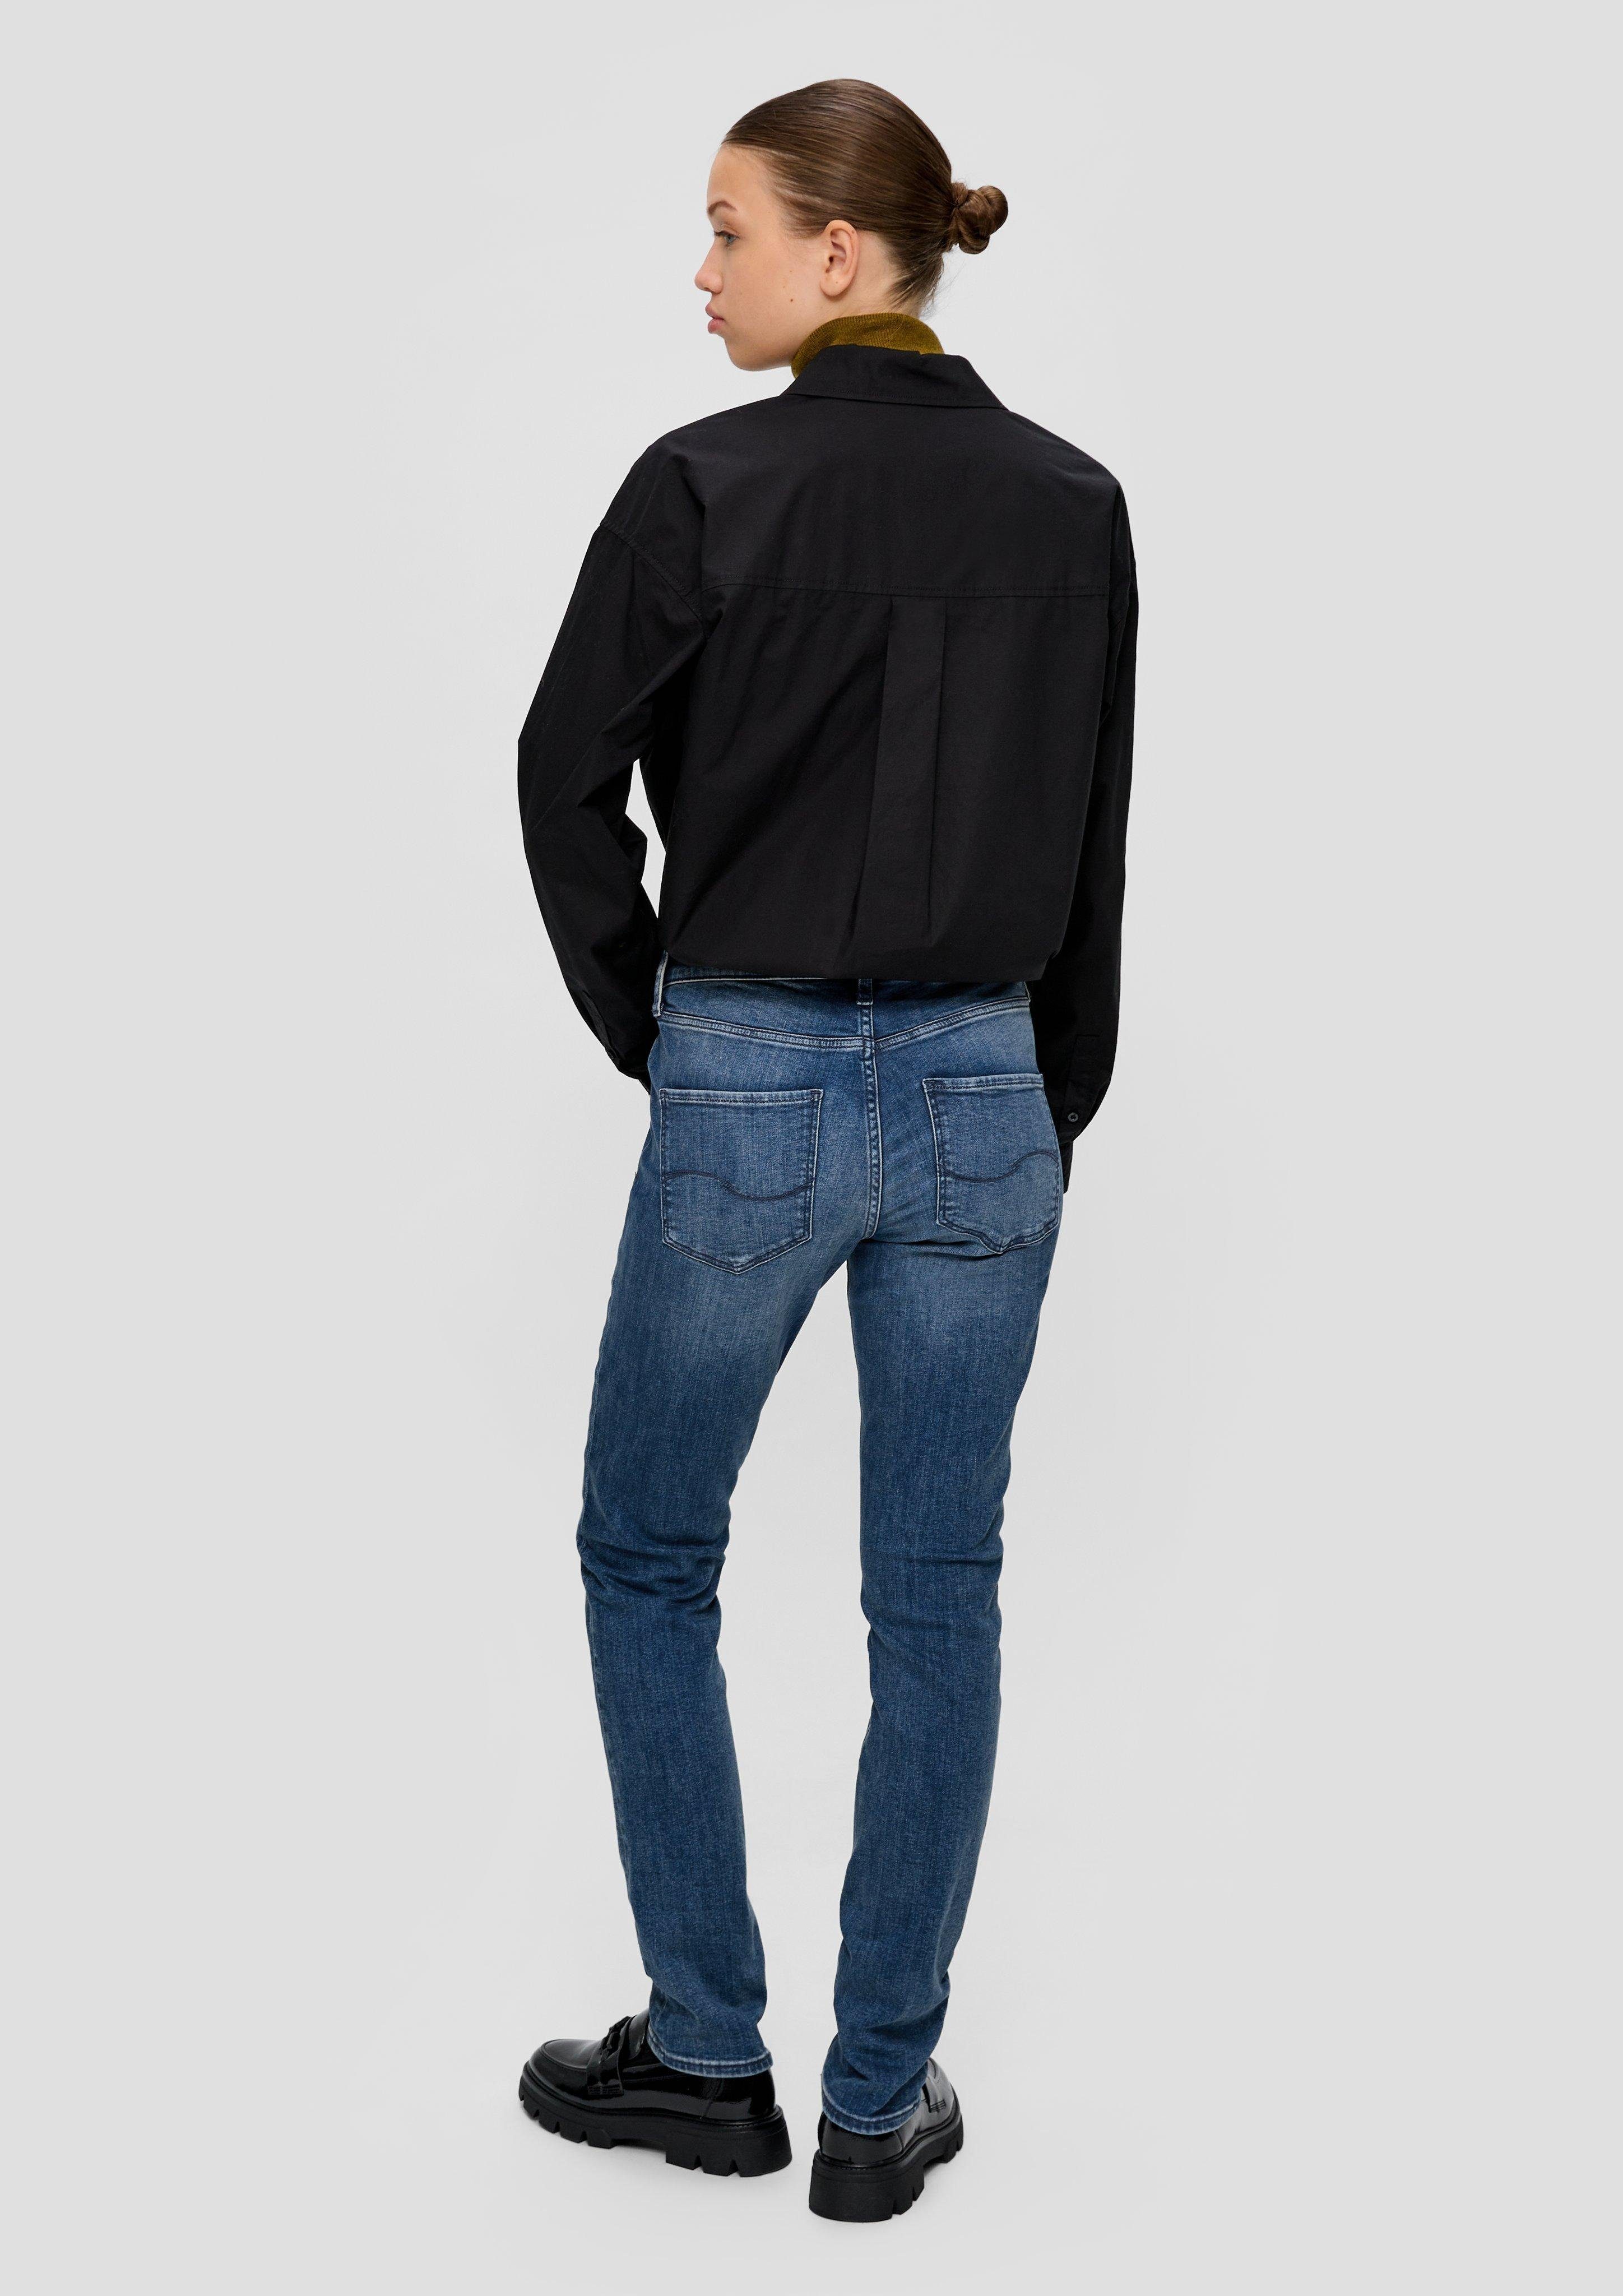 Label-Patch QS / Stoffhose Slim / Catie Leg Jeans Mid Rise blau Fit Slim /